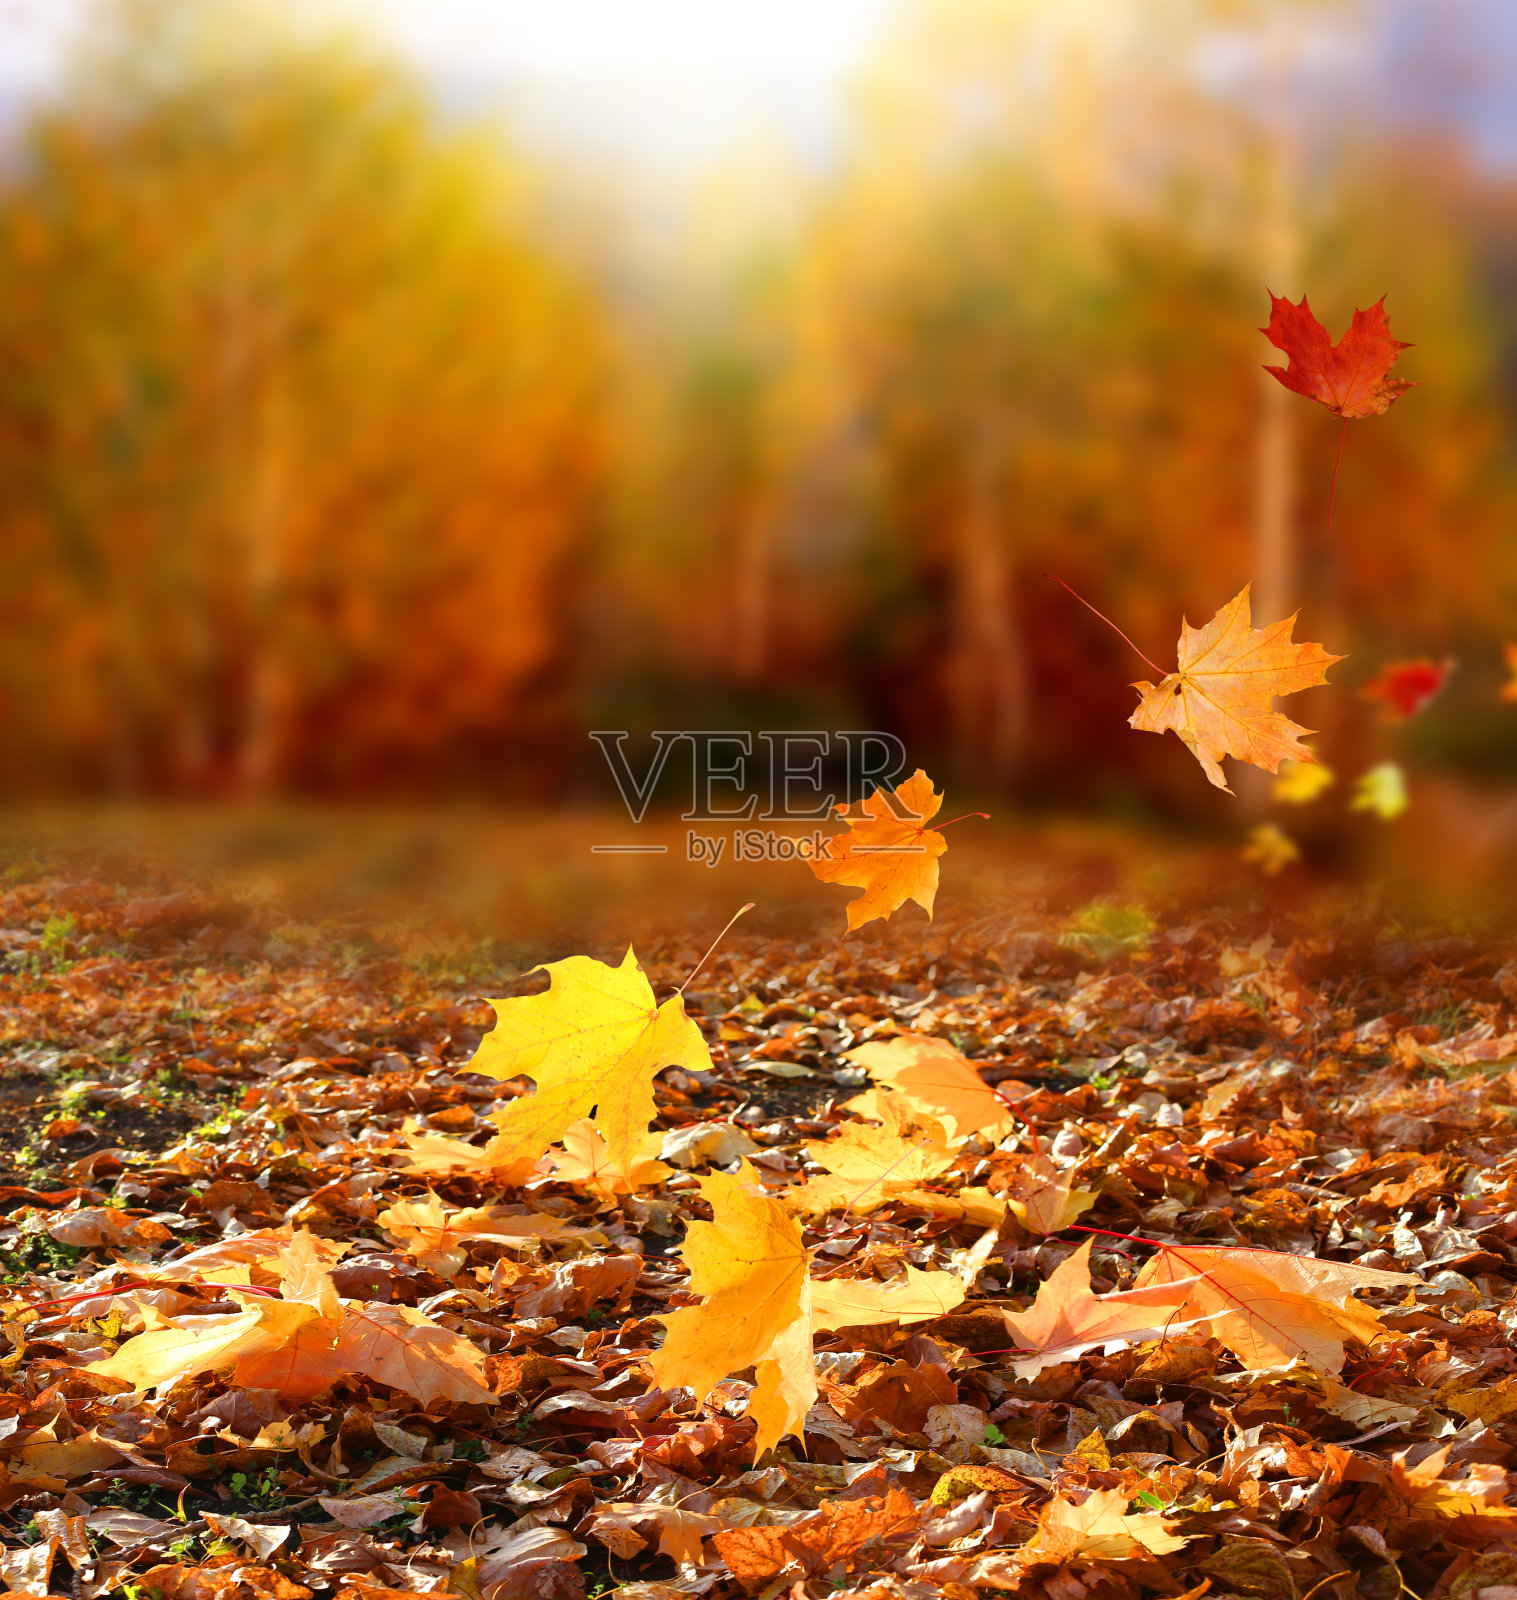 描写景色美的句子_一句描写秋天景色的句子_秋天草原的景色描写